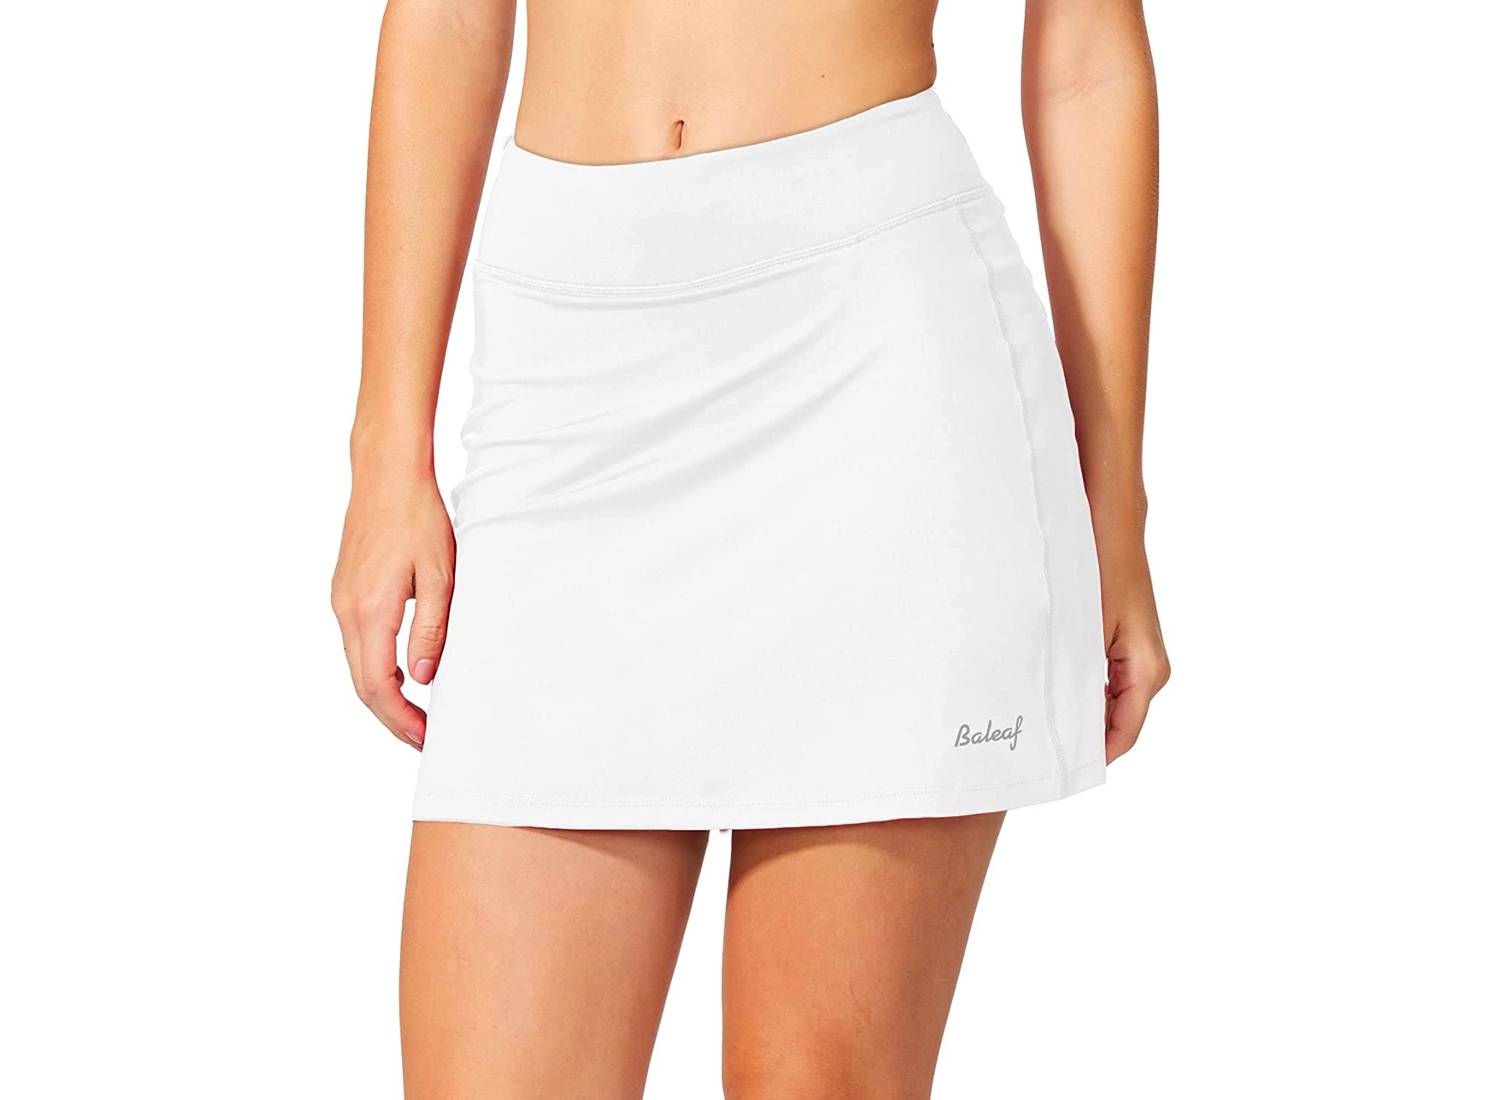 Woman wearing white tennis skirt